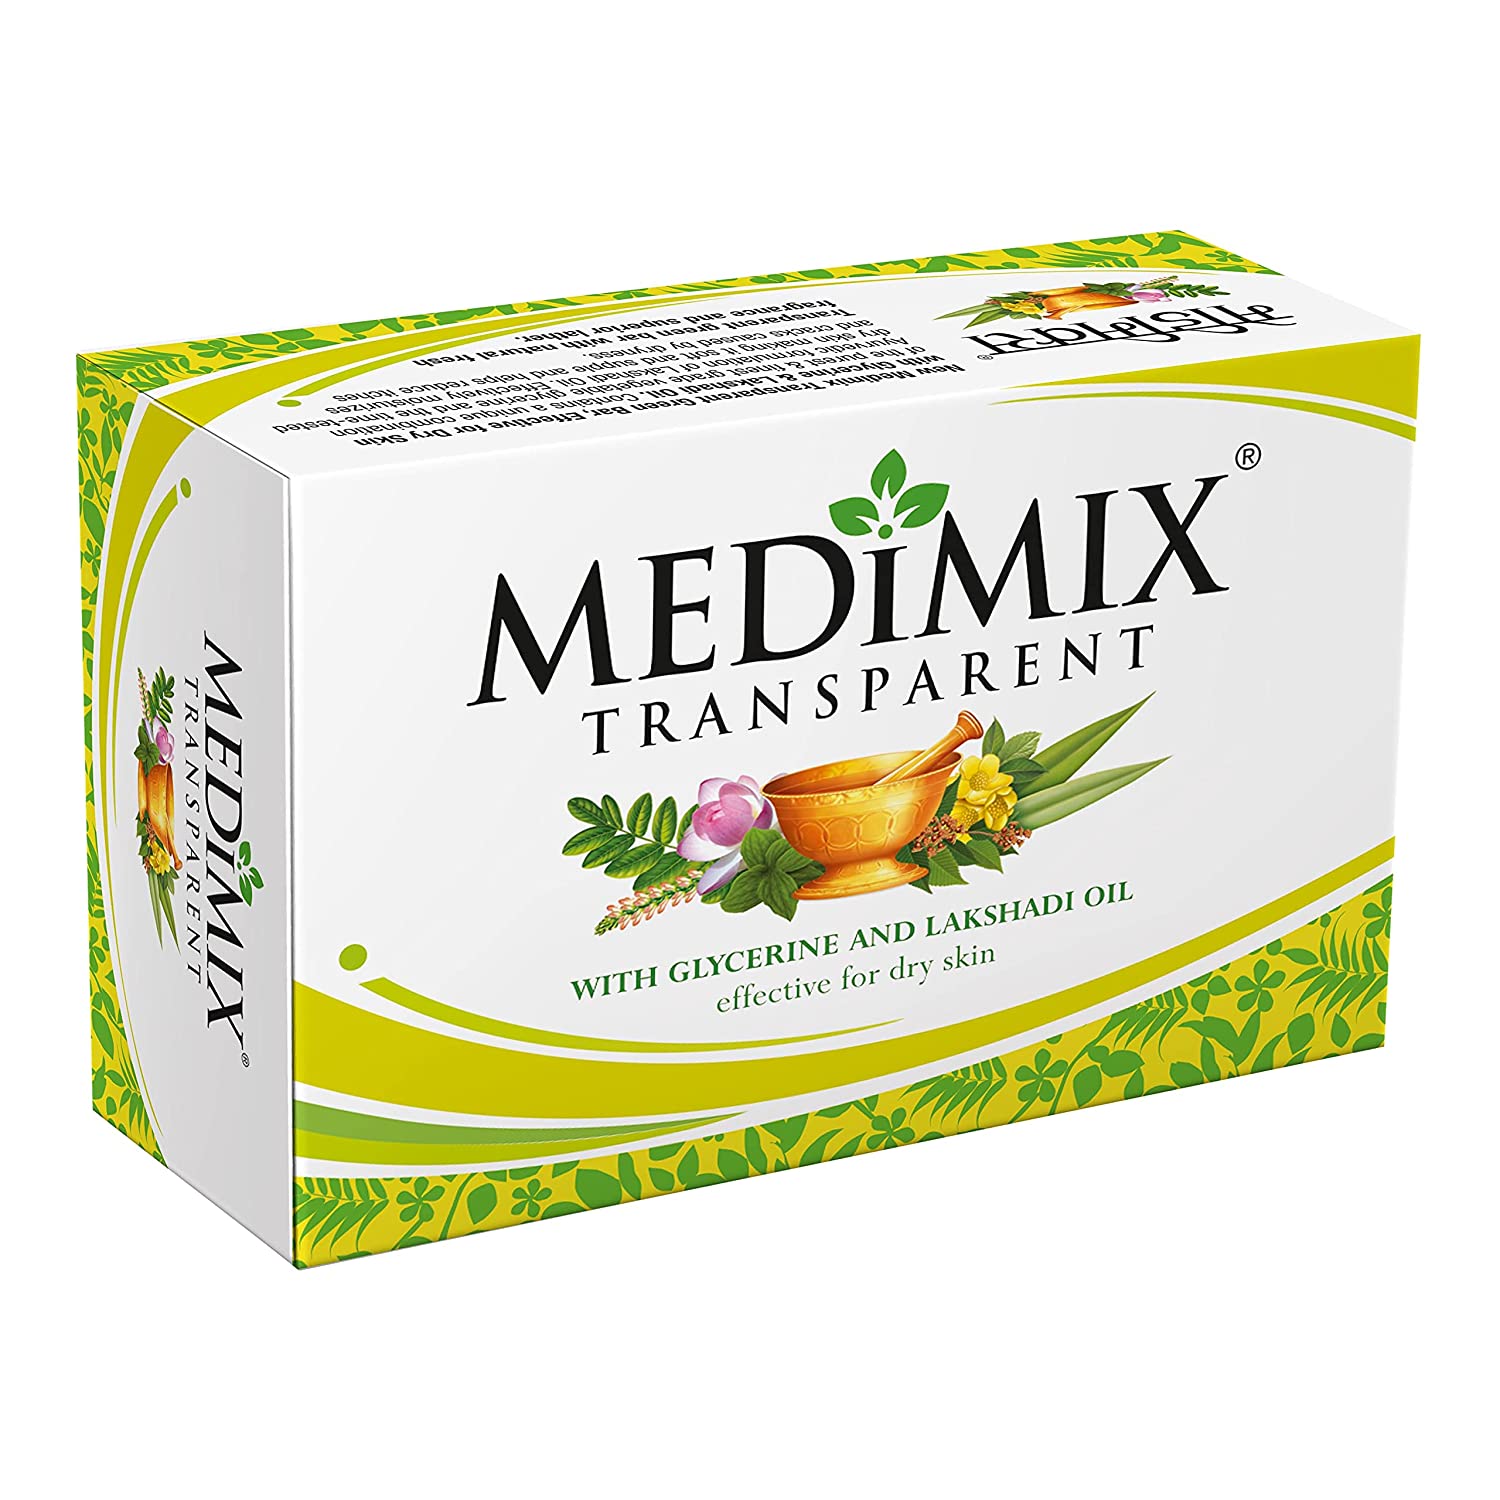 Medimix Transparent Soap Bar 125g